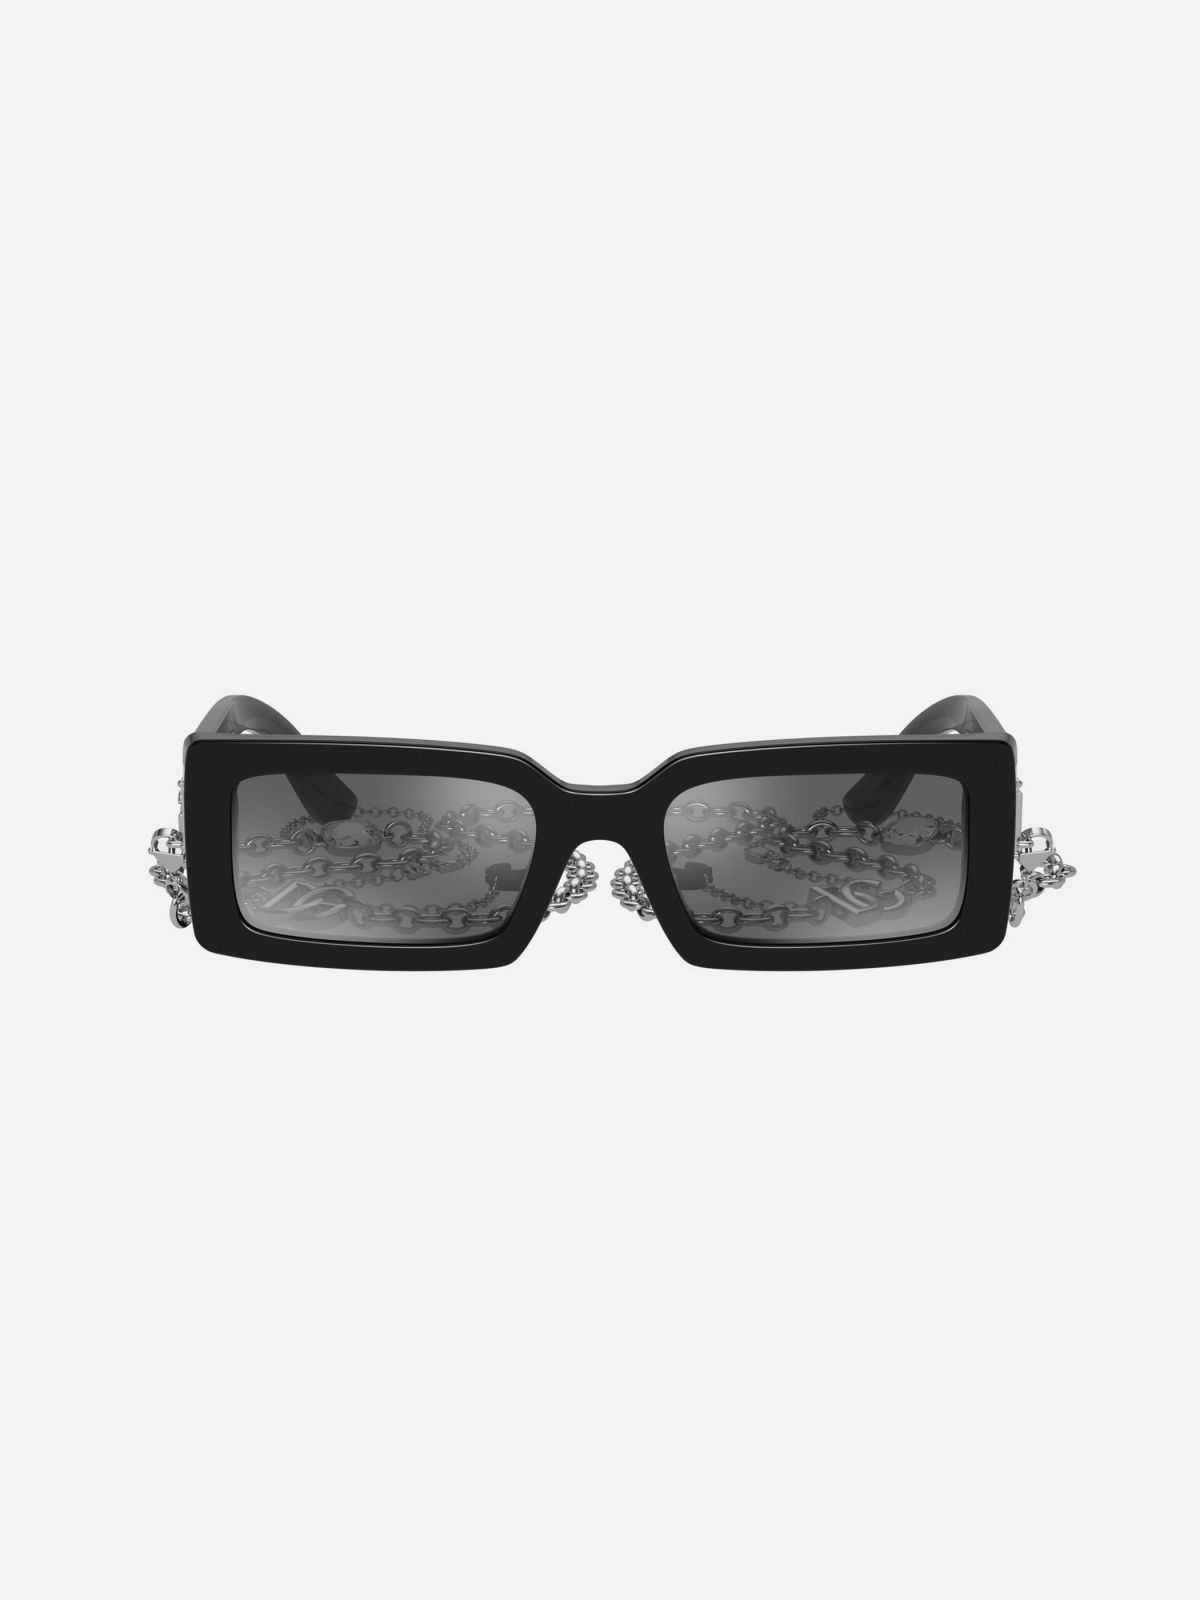  משקפי שמש מלבניים / נשים של D&G